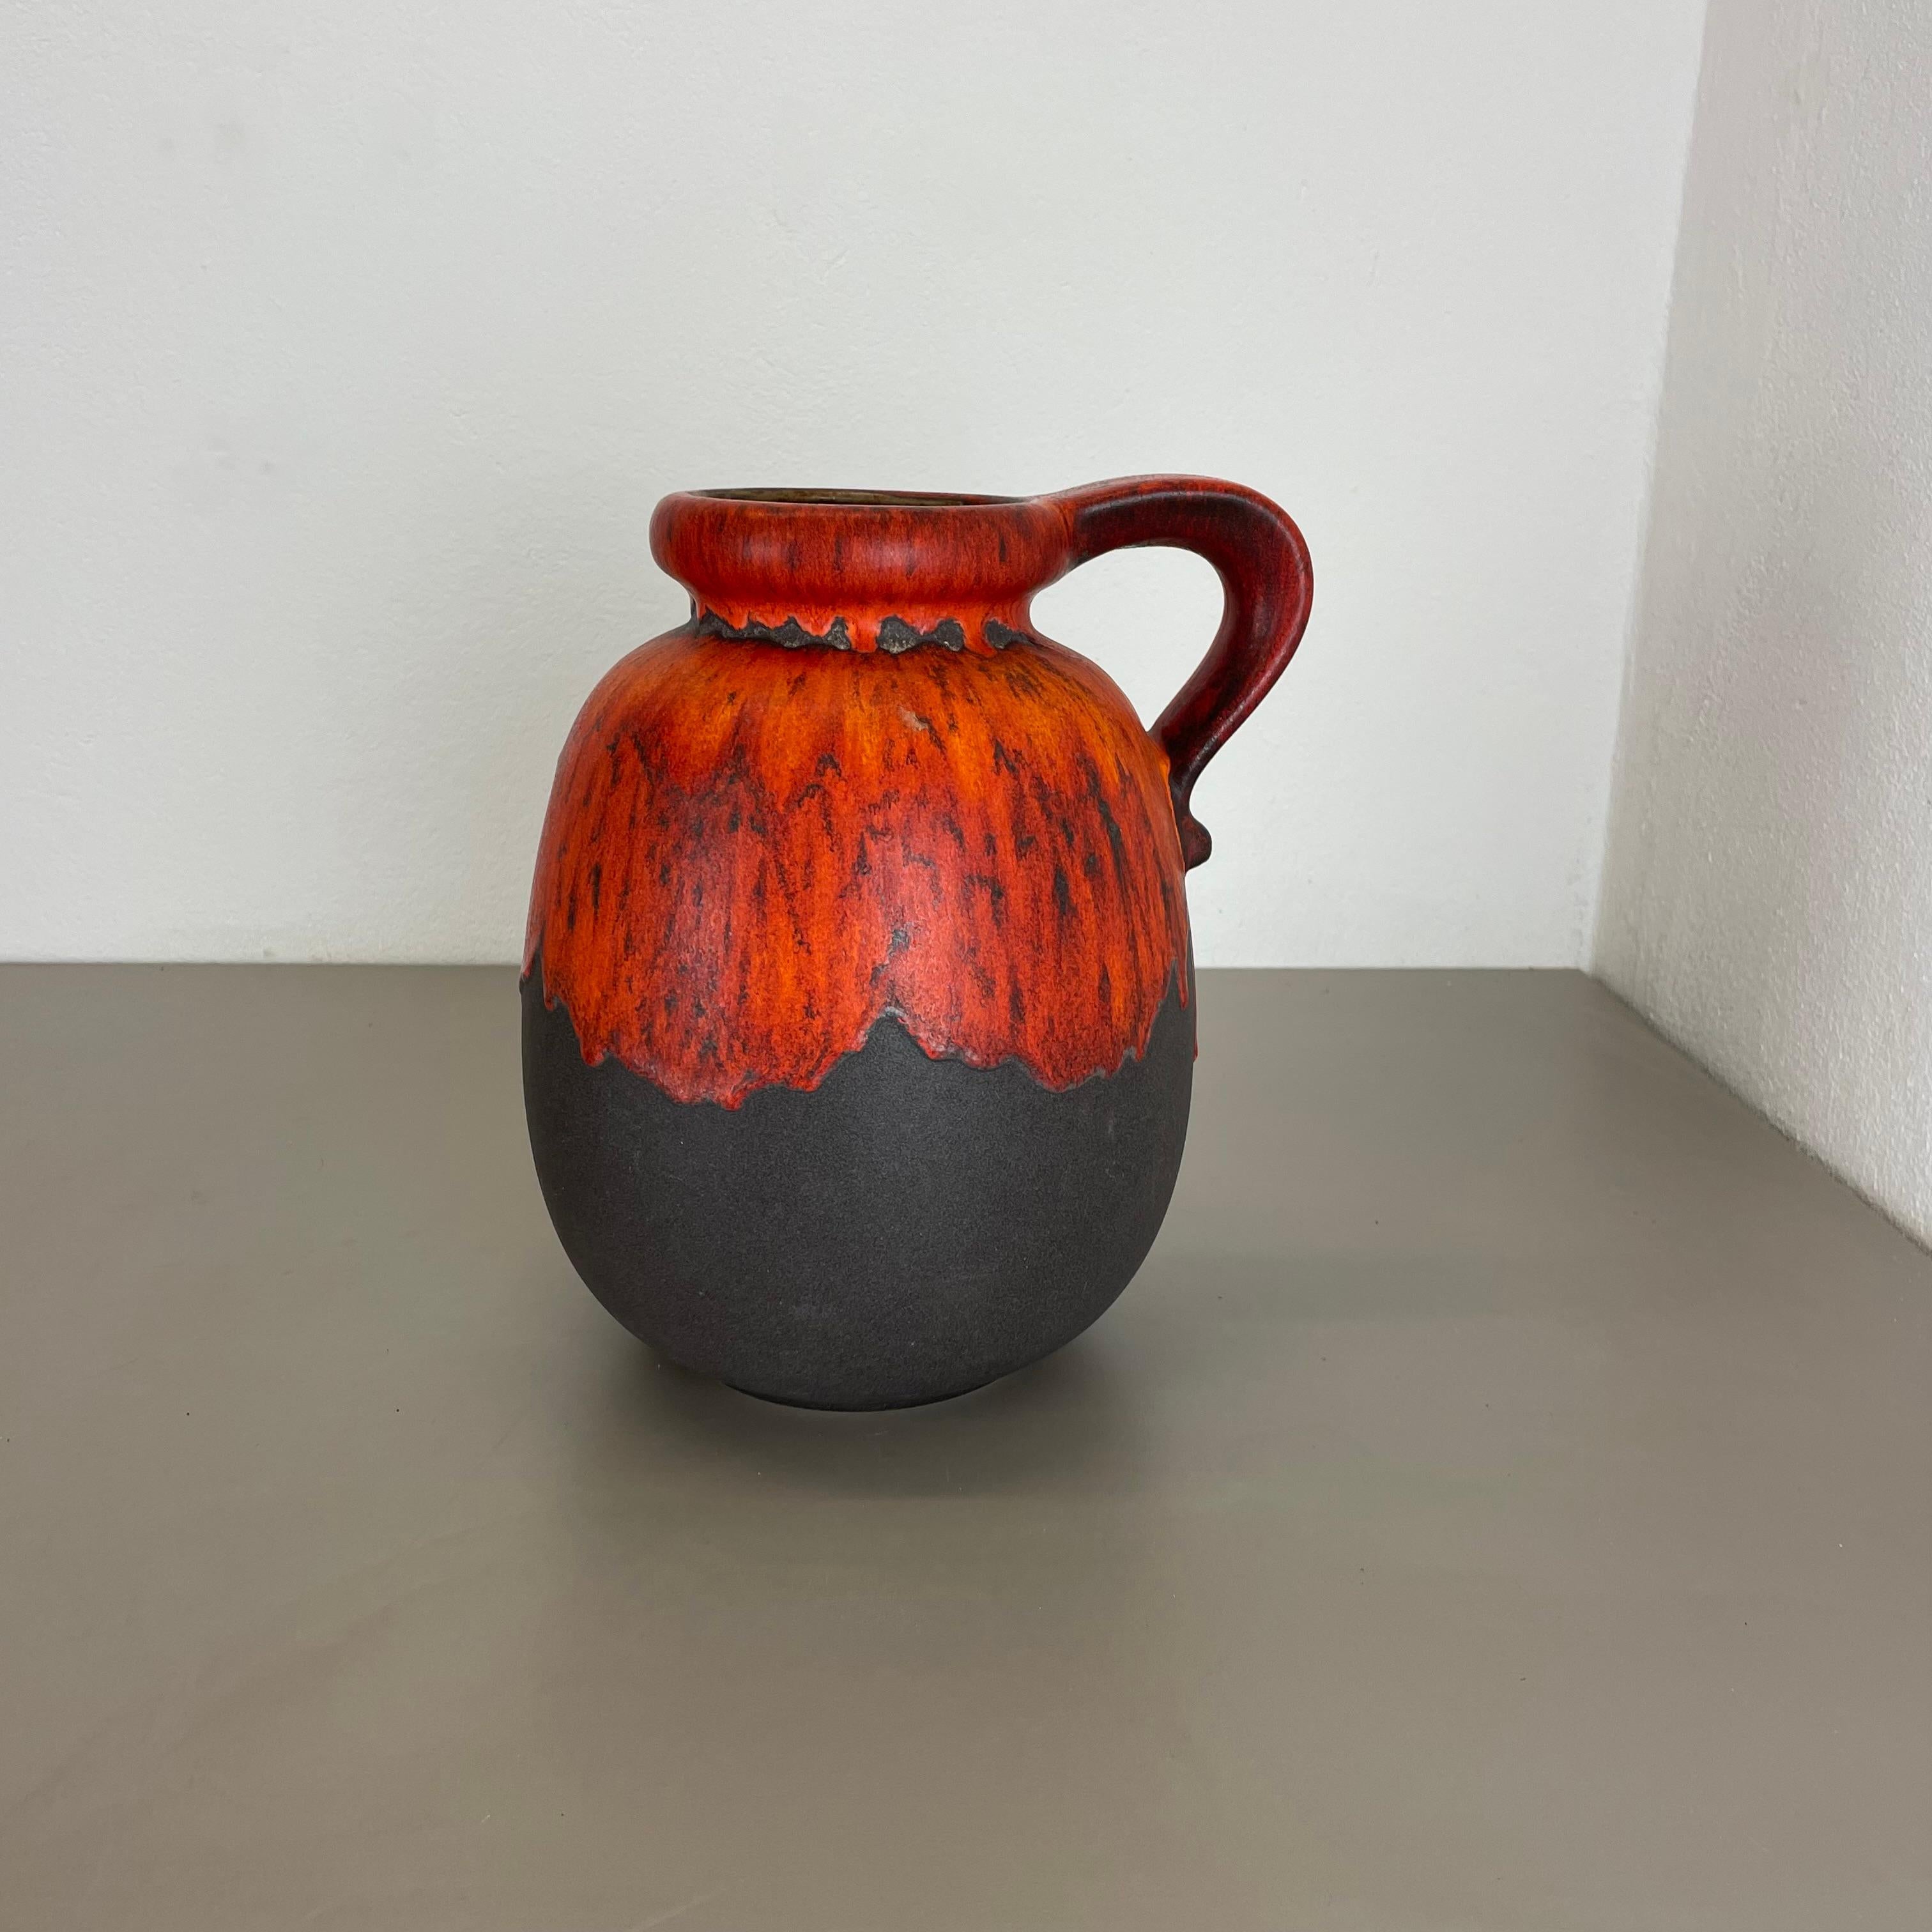 Artikel:

Fette Lava-Kunstvase


Modell: 484-30


Produzent:

Scheurich, Deutschland



Jahrzehnt:

1970s




Diese originelle Vintage-Vase wurde in den 1970er Jahren in Deutschland hergestellt. Sie ist aus Keramik in fetter Lava-Optik mit